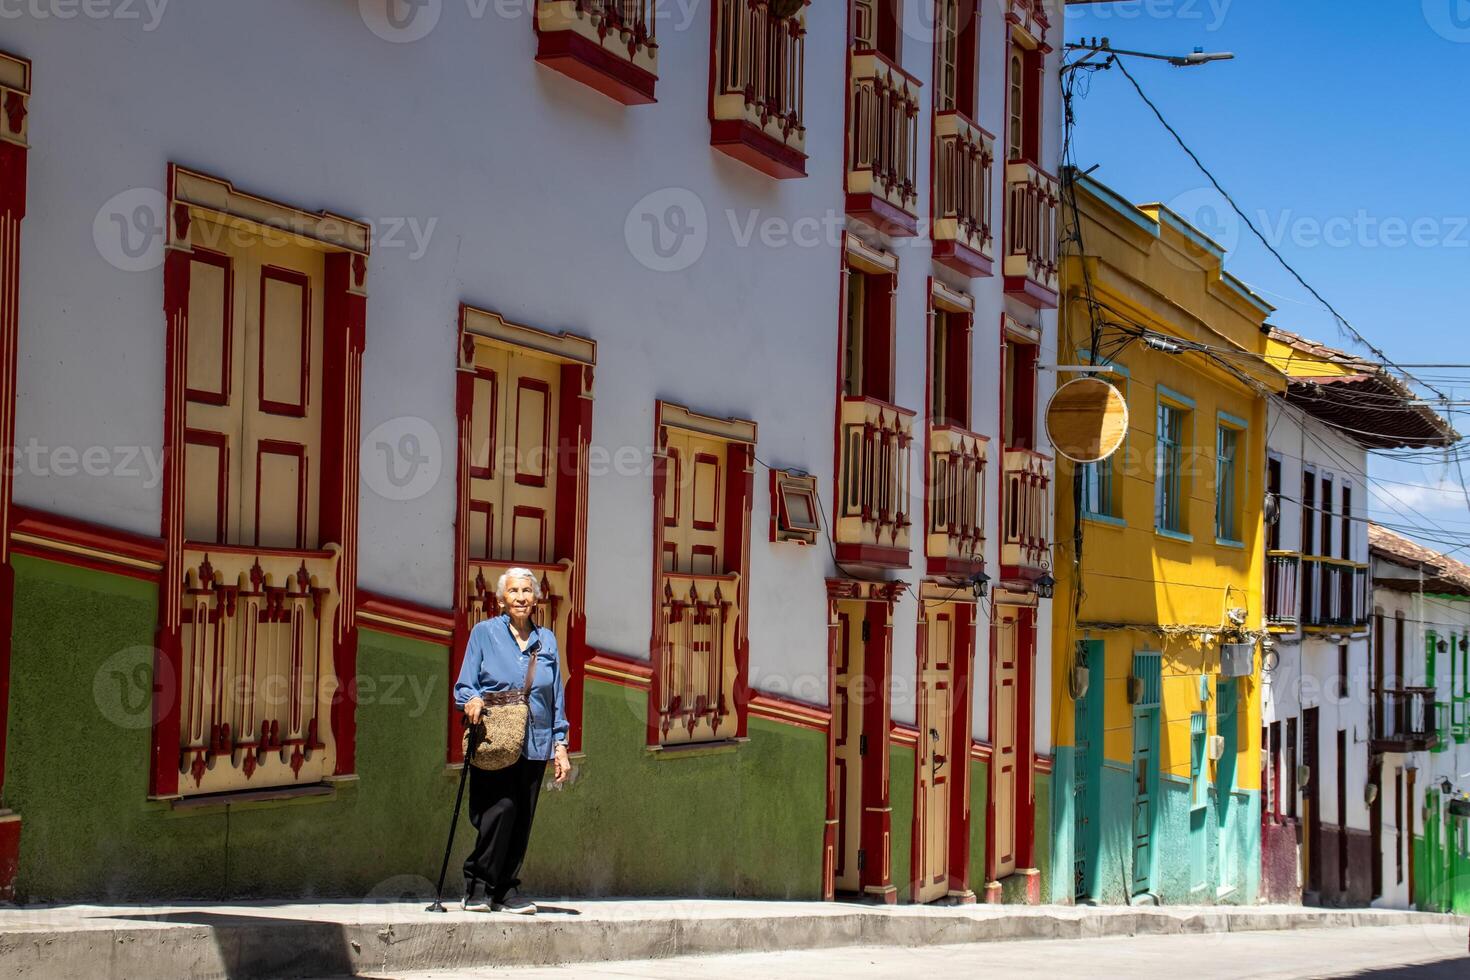 anziano donna turista a il bellissimo eredità cittadina di salamina nel il Dipartimento di caldas nel Colombia foto